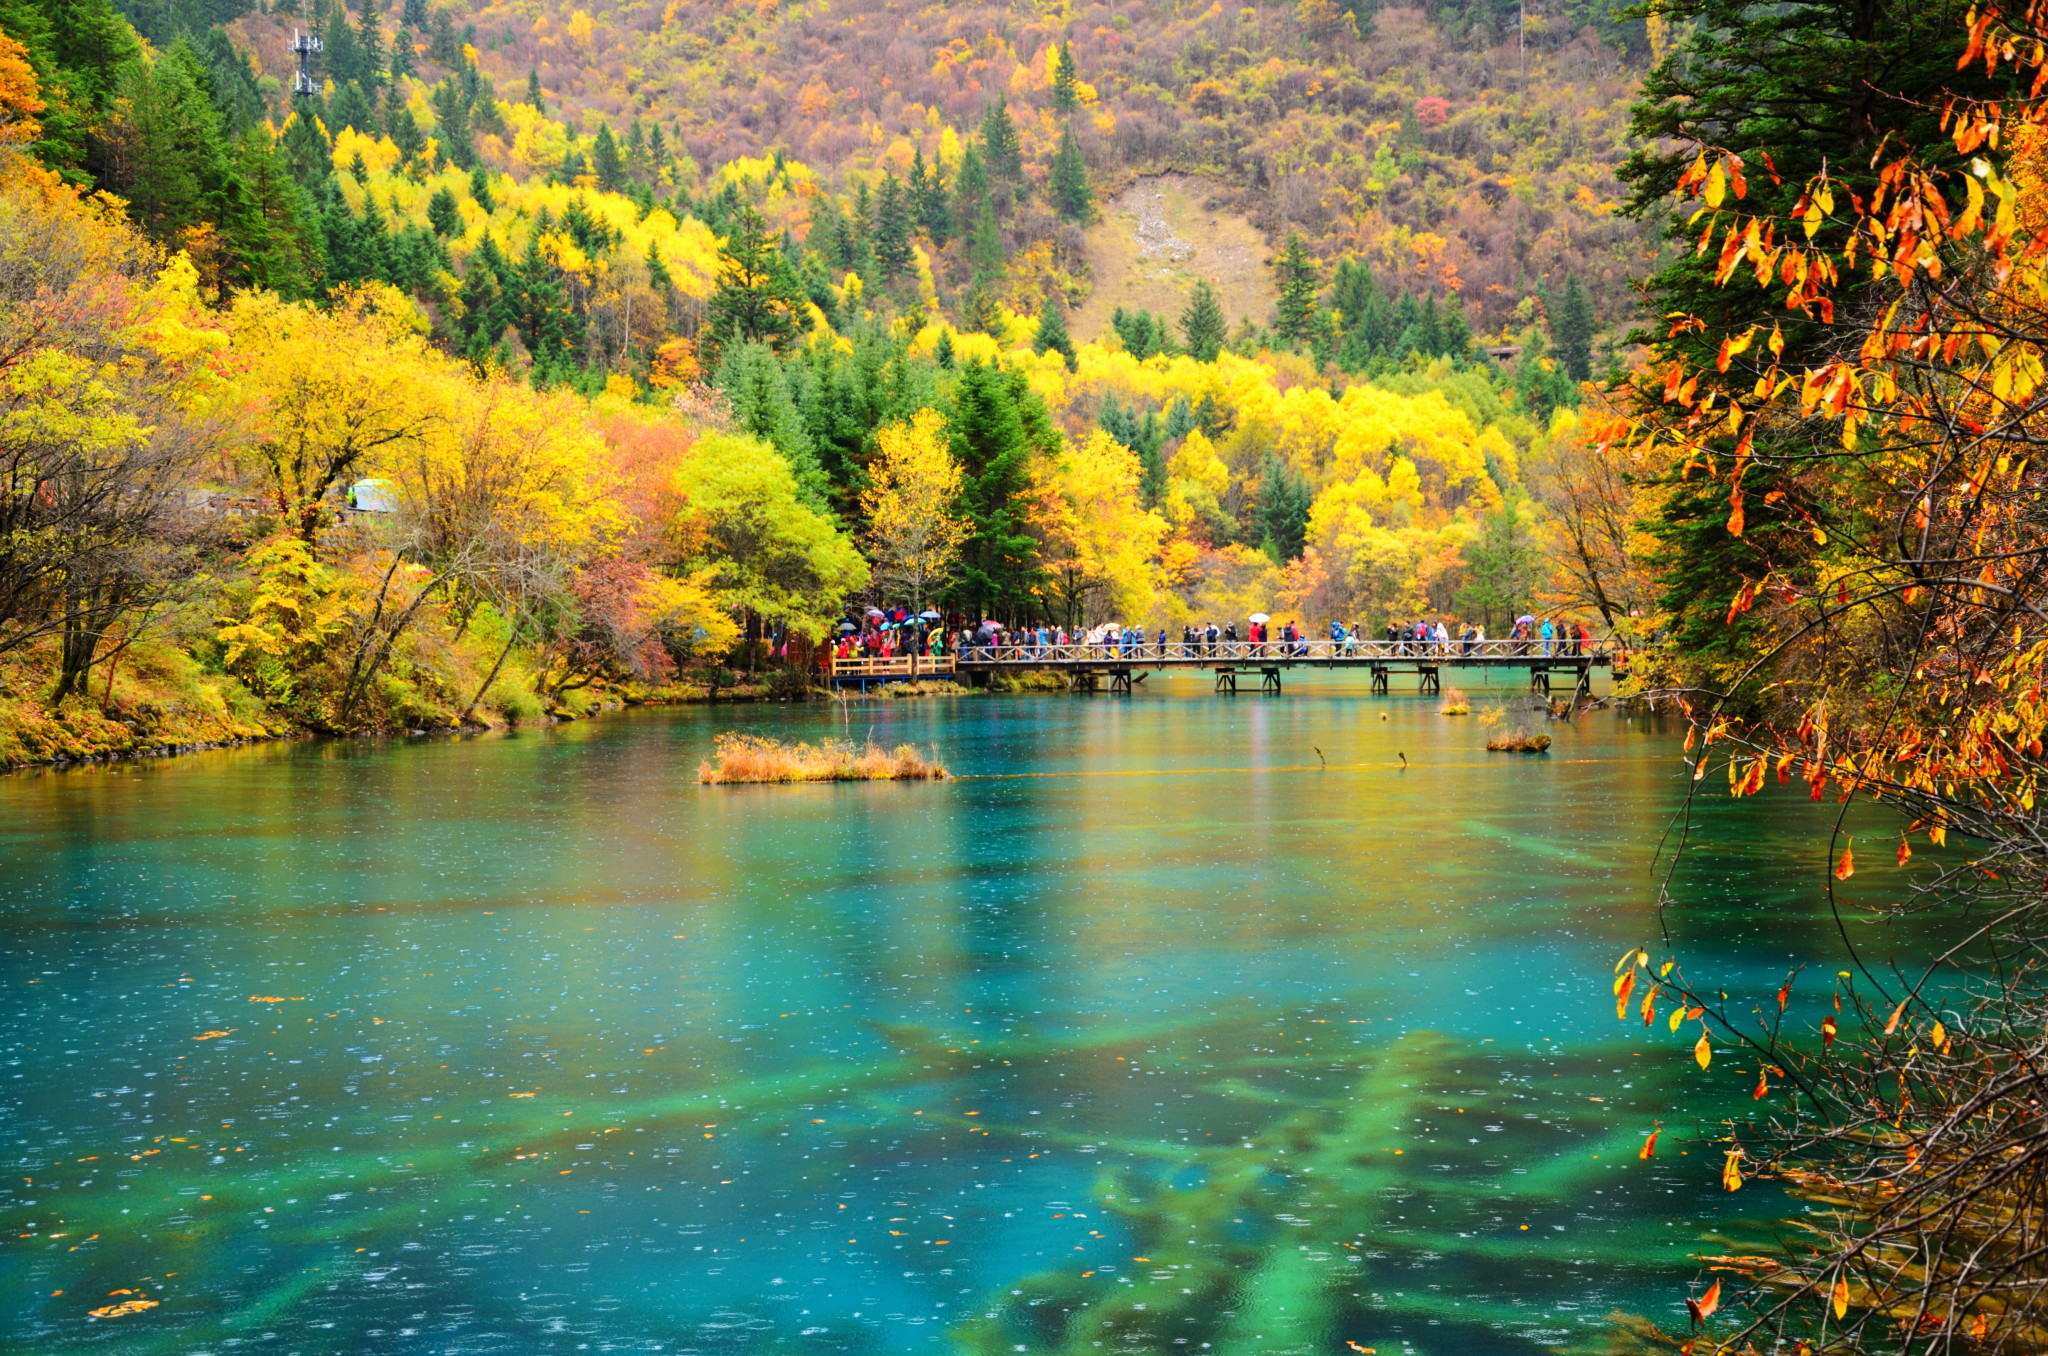 秋天的九寨沟被称为"美丽的童话世界".by 敖戈